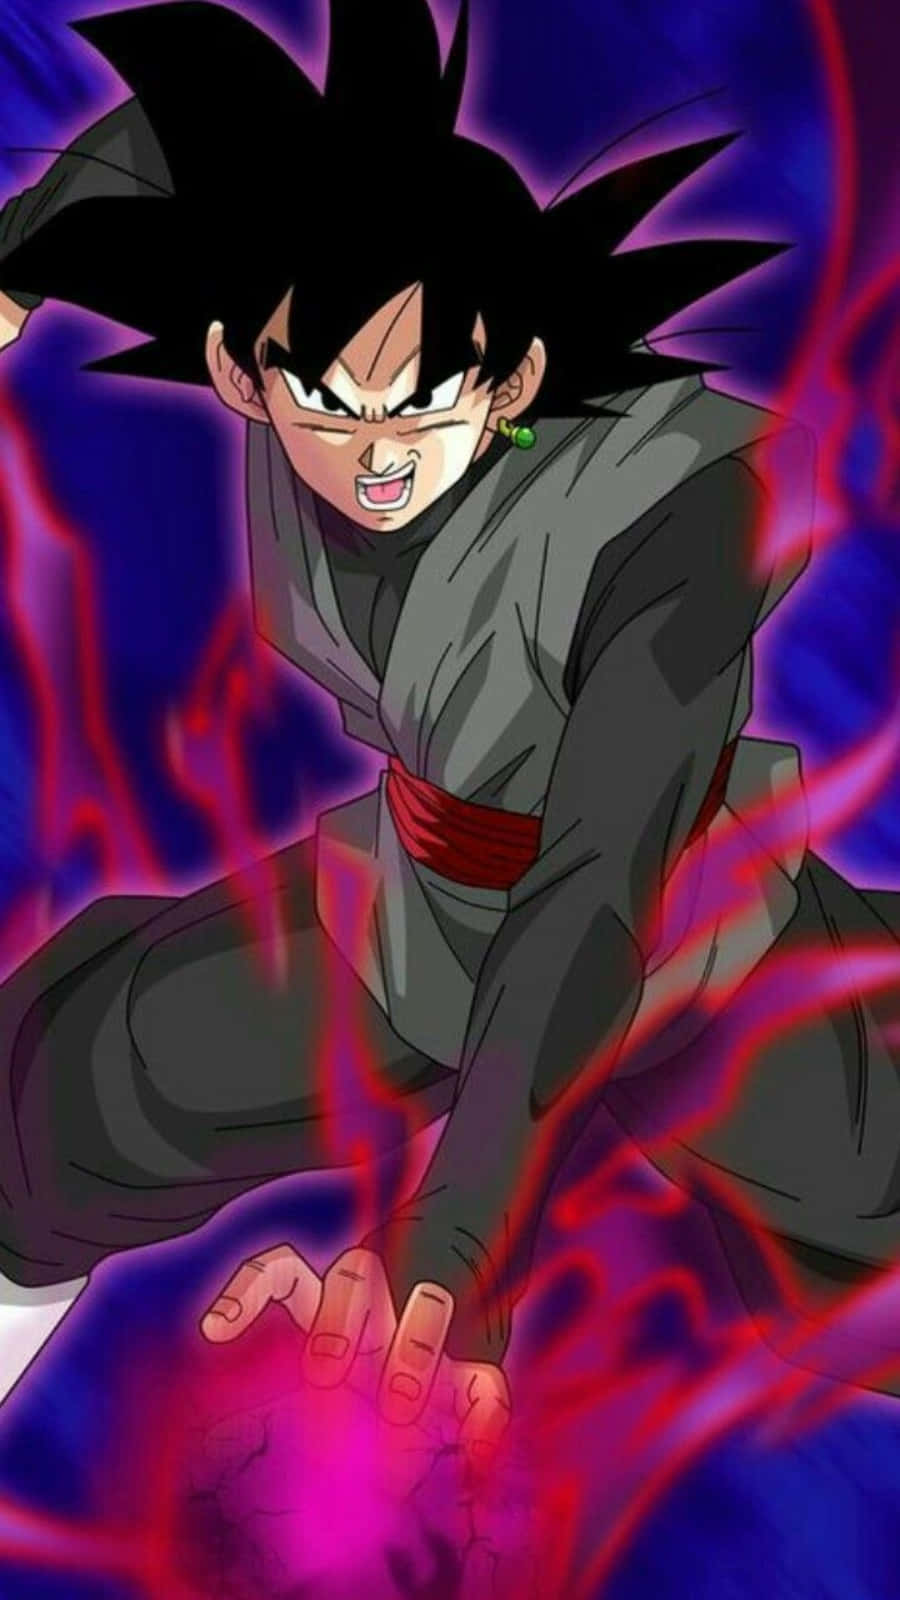 Supersaiyan Rose Goku Black Would Be Translated To: Súper Saiyan Rose Goku Black